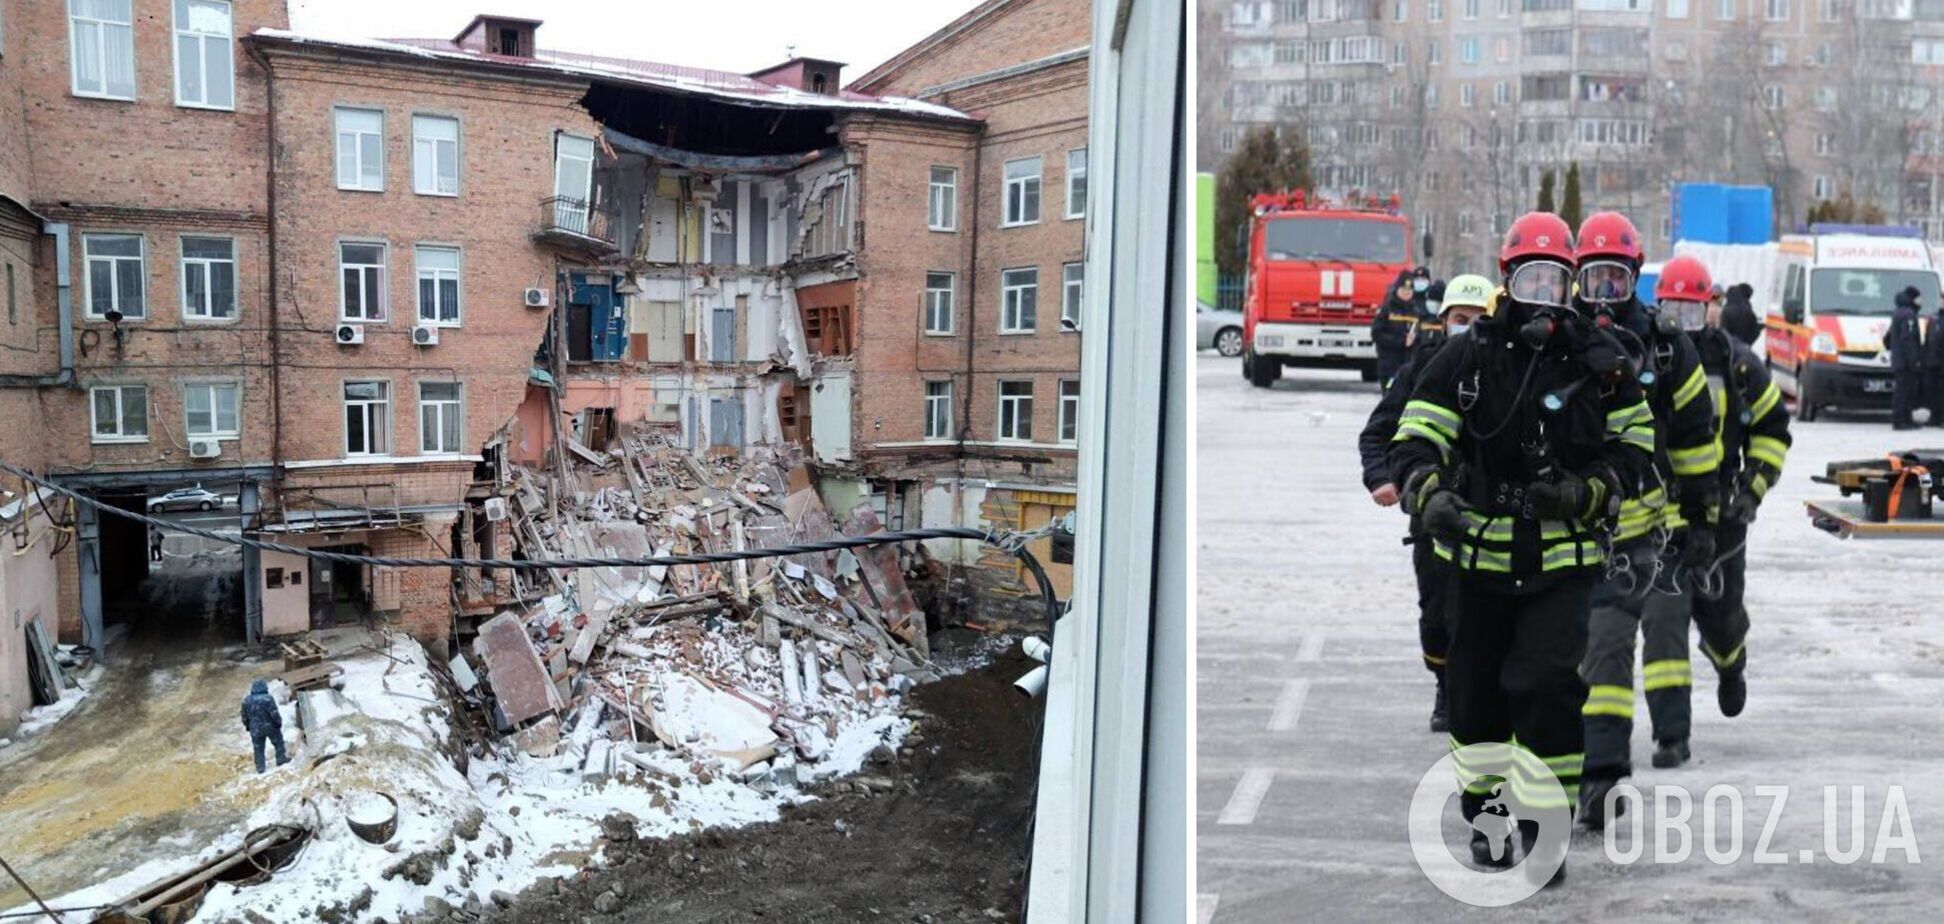 В Харькове обрушилась стена здания, людей срочно эвакуировали: названа вероятная причина ЧП. Фото и видео